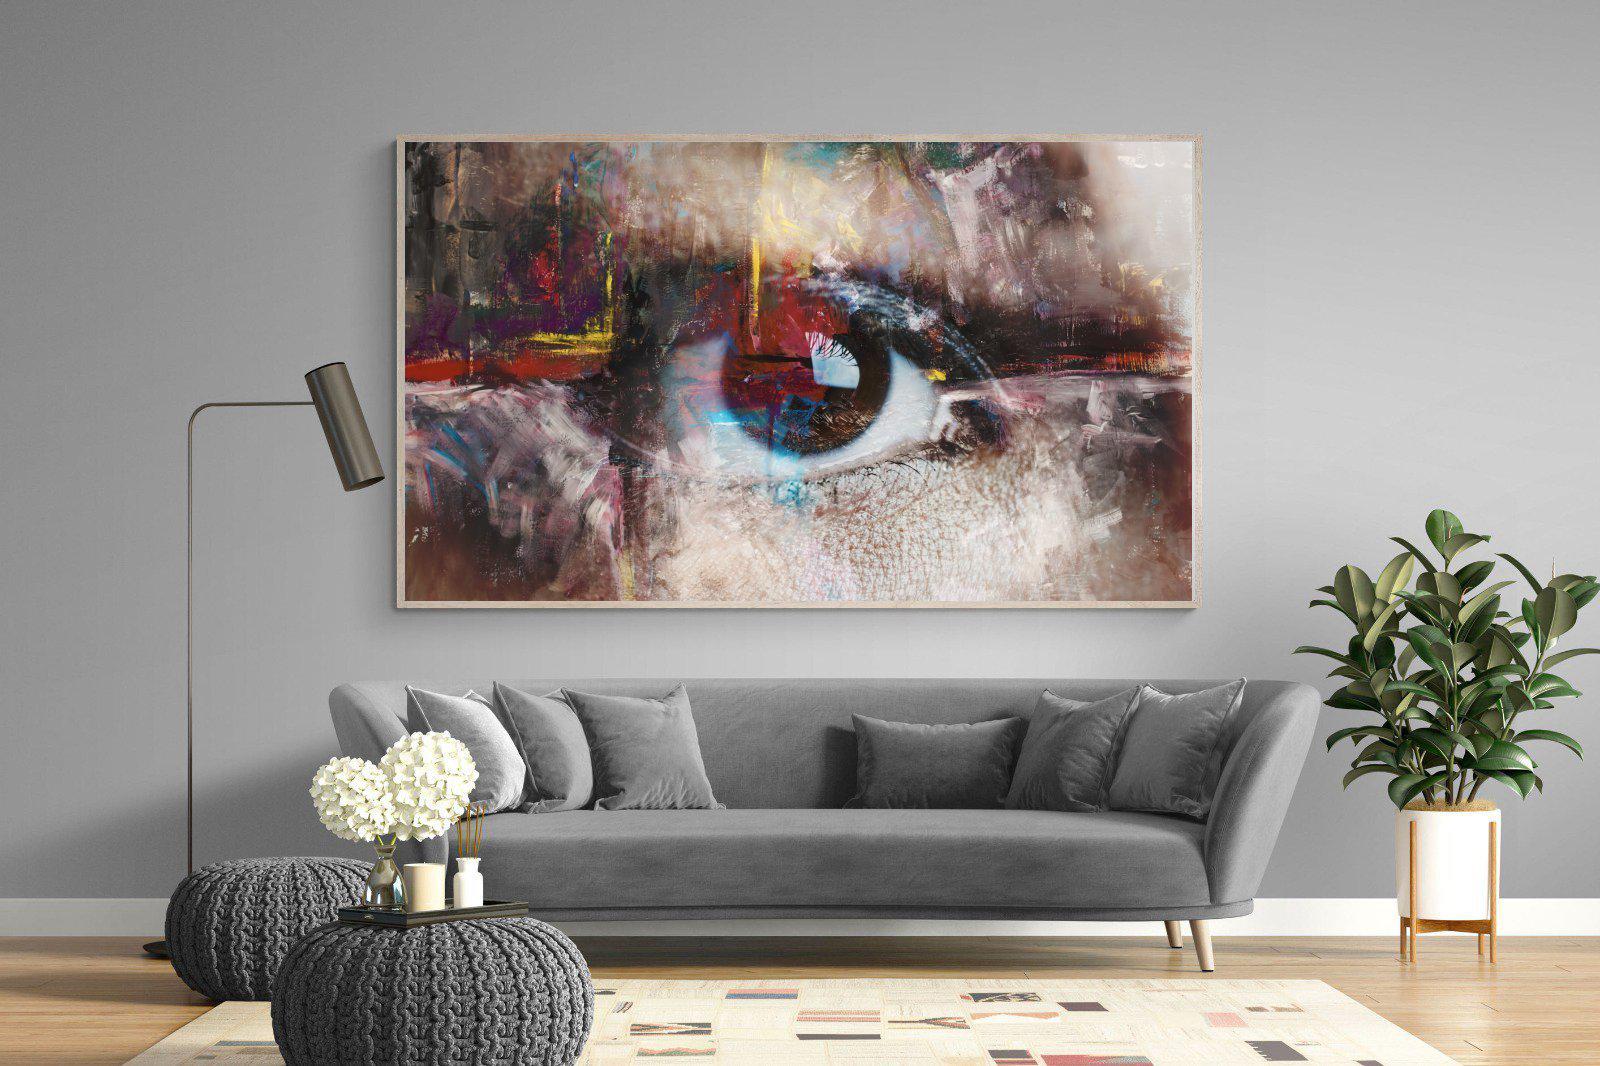 Eye Spy-Wall_Art-220 x 130cm-Mounted Canvas-Wood-Pixalot